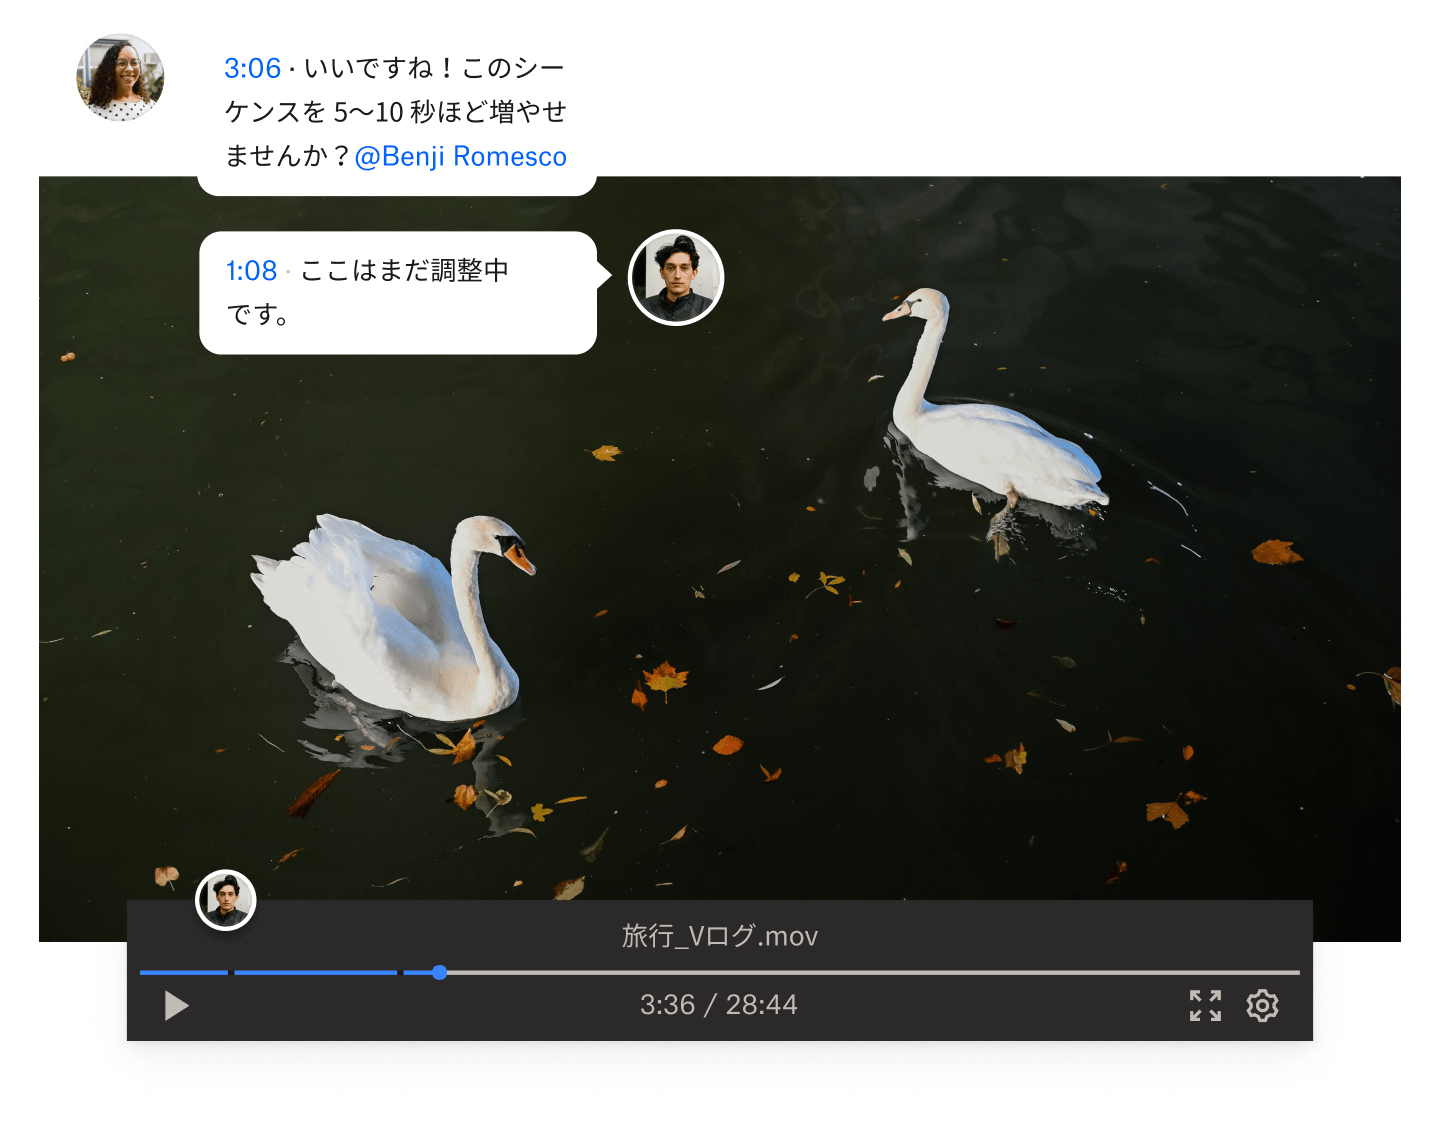 2 羽の白鳥が泳いでいる Dropbox 動画ファイルで、タイムコード付きのコメントを追加する 2 人の人物